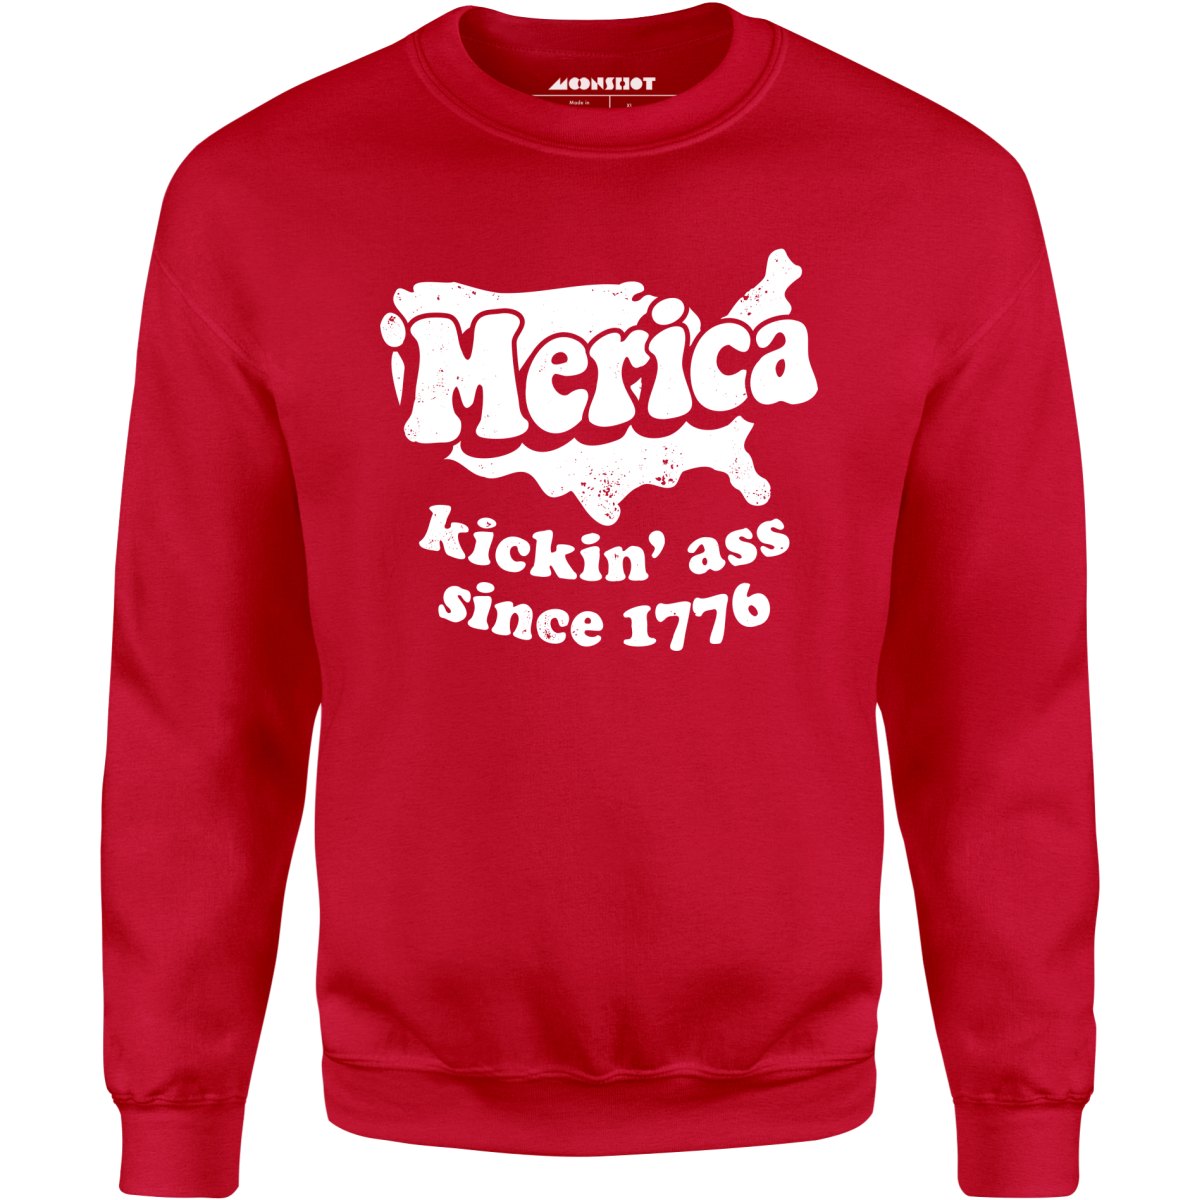 'Merica Kickin' Ass Since 1776 - Unisex Sweatshirt